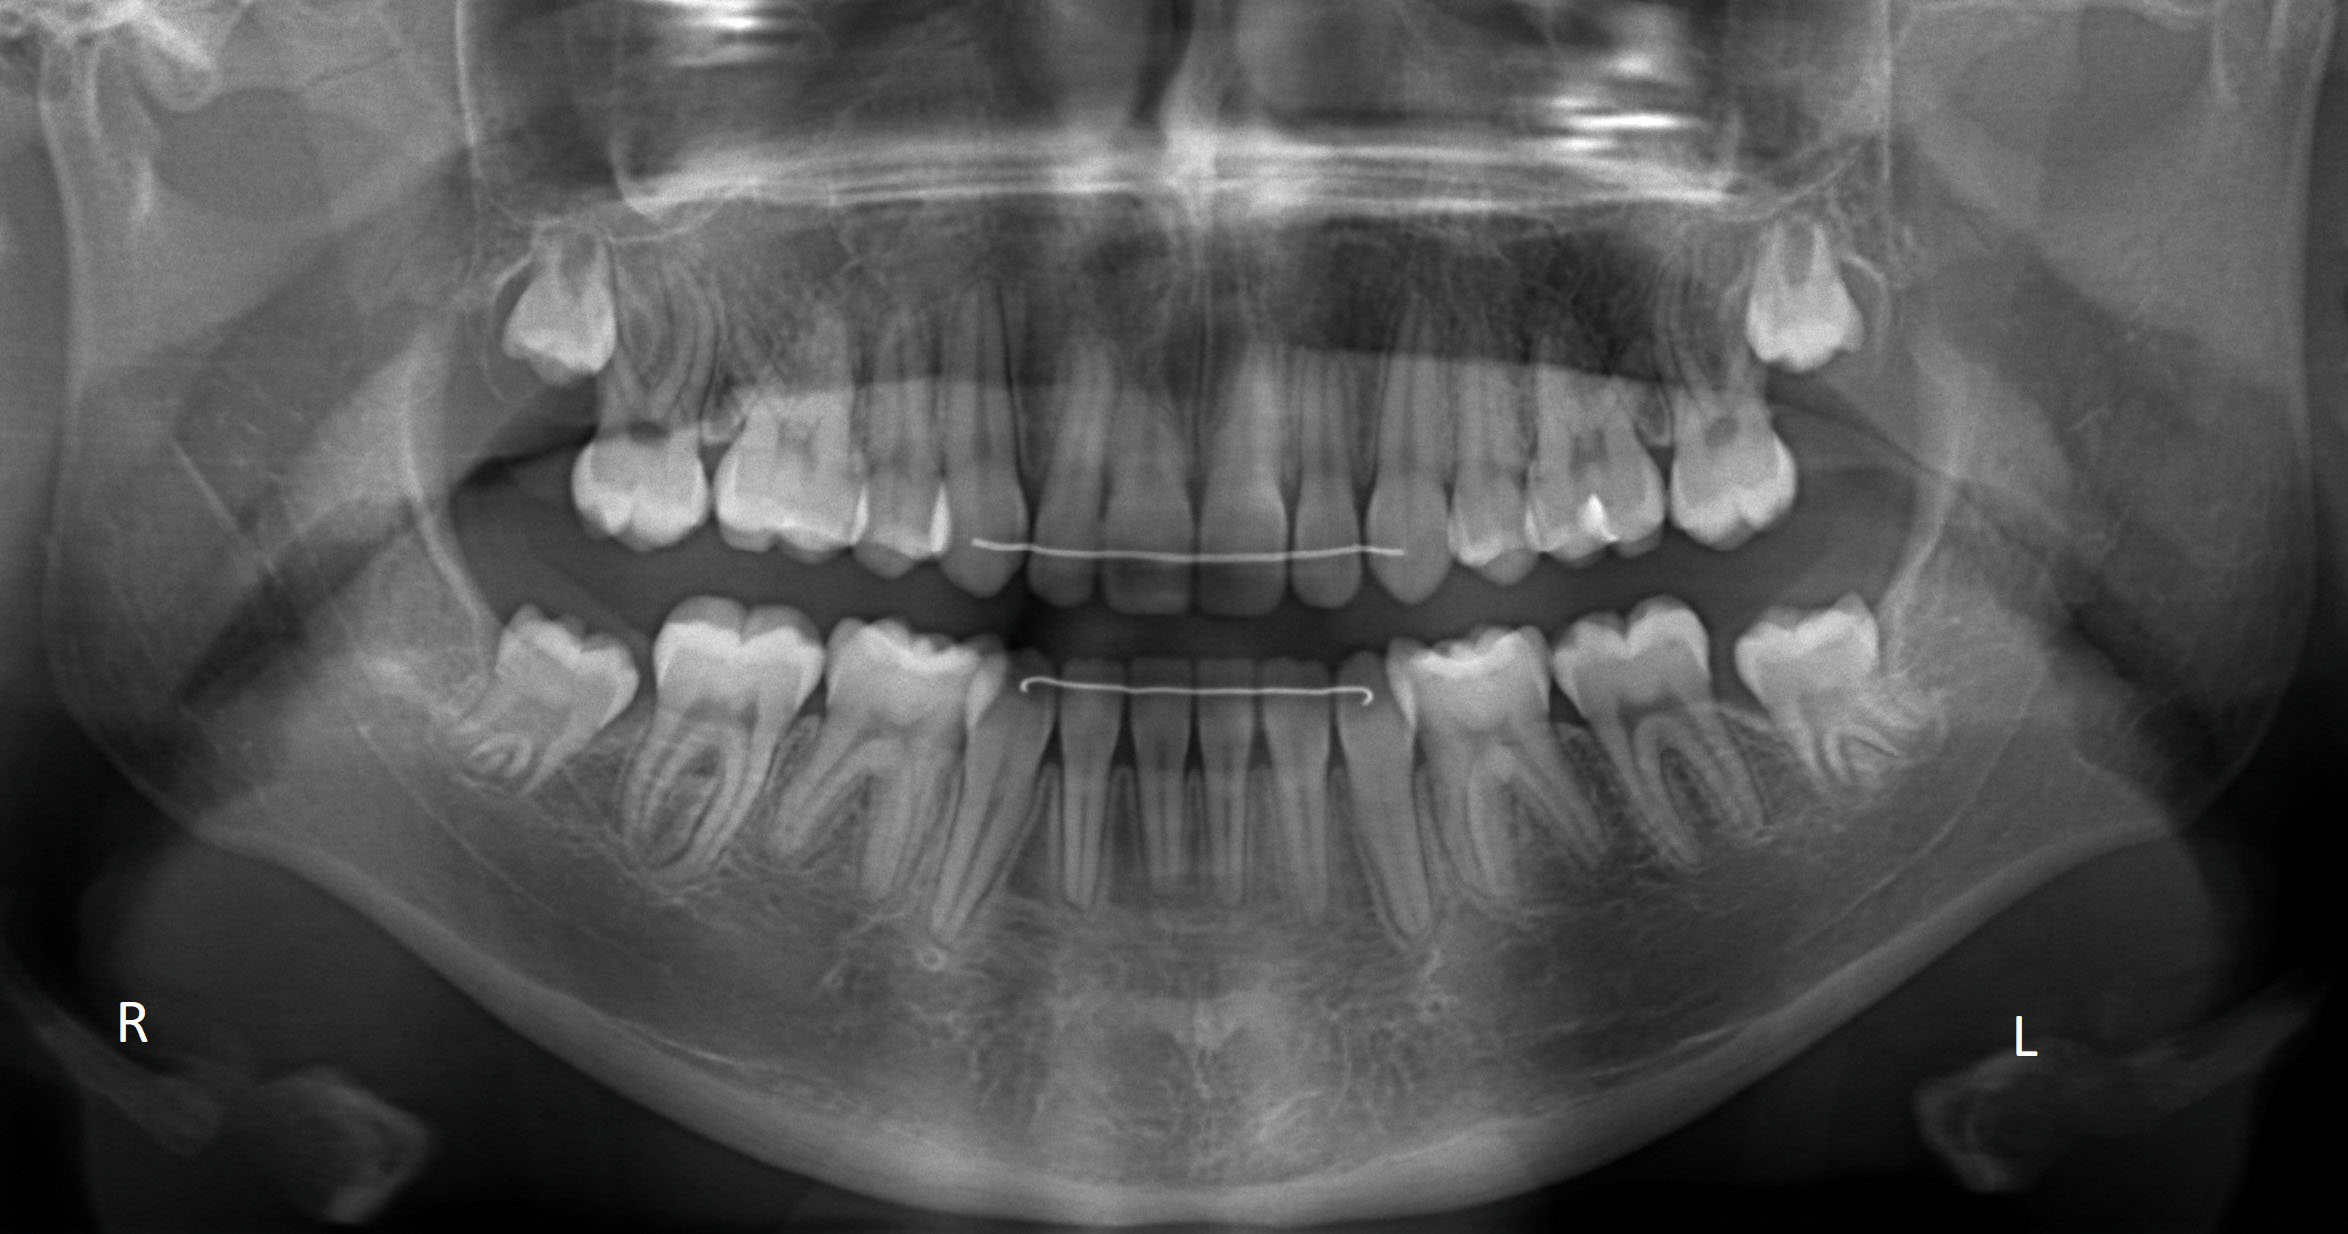 Binda: 'Orthodontie niet voor scheve tanden' - Barneveld